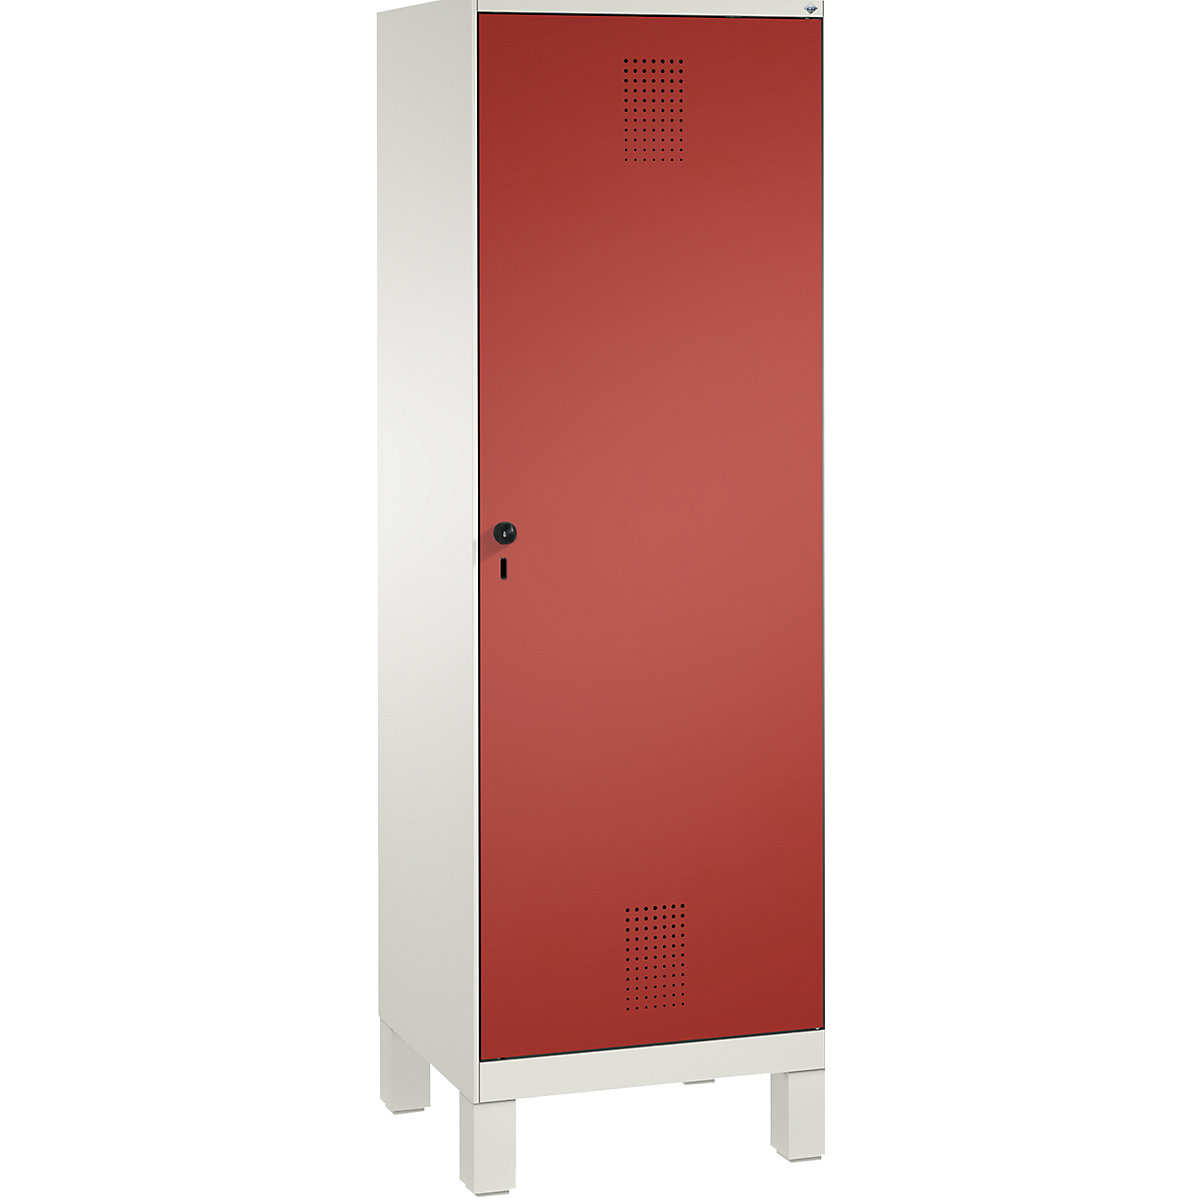 Šatní skříň s nohami EVOLO s dveřmi přes 2 oddíly – C+P, 2 oddíly, 1 dveře, šířka oddílu 300 mm, dopravní bílá / ohnivě červená-15